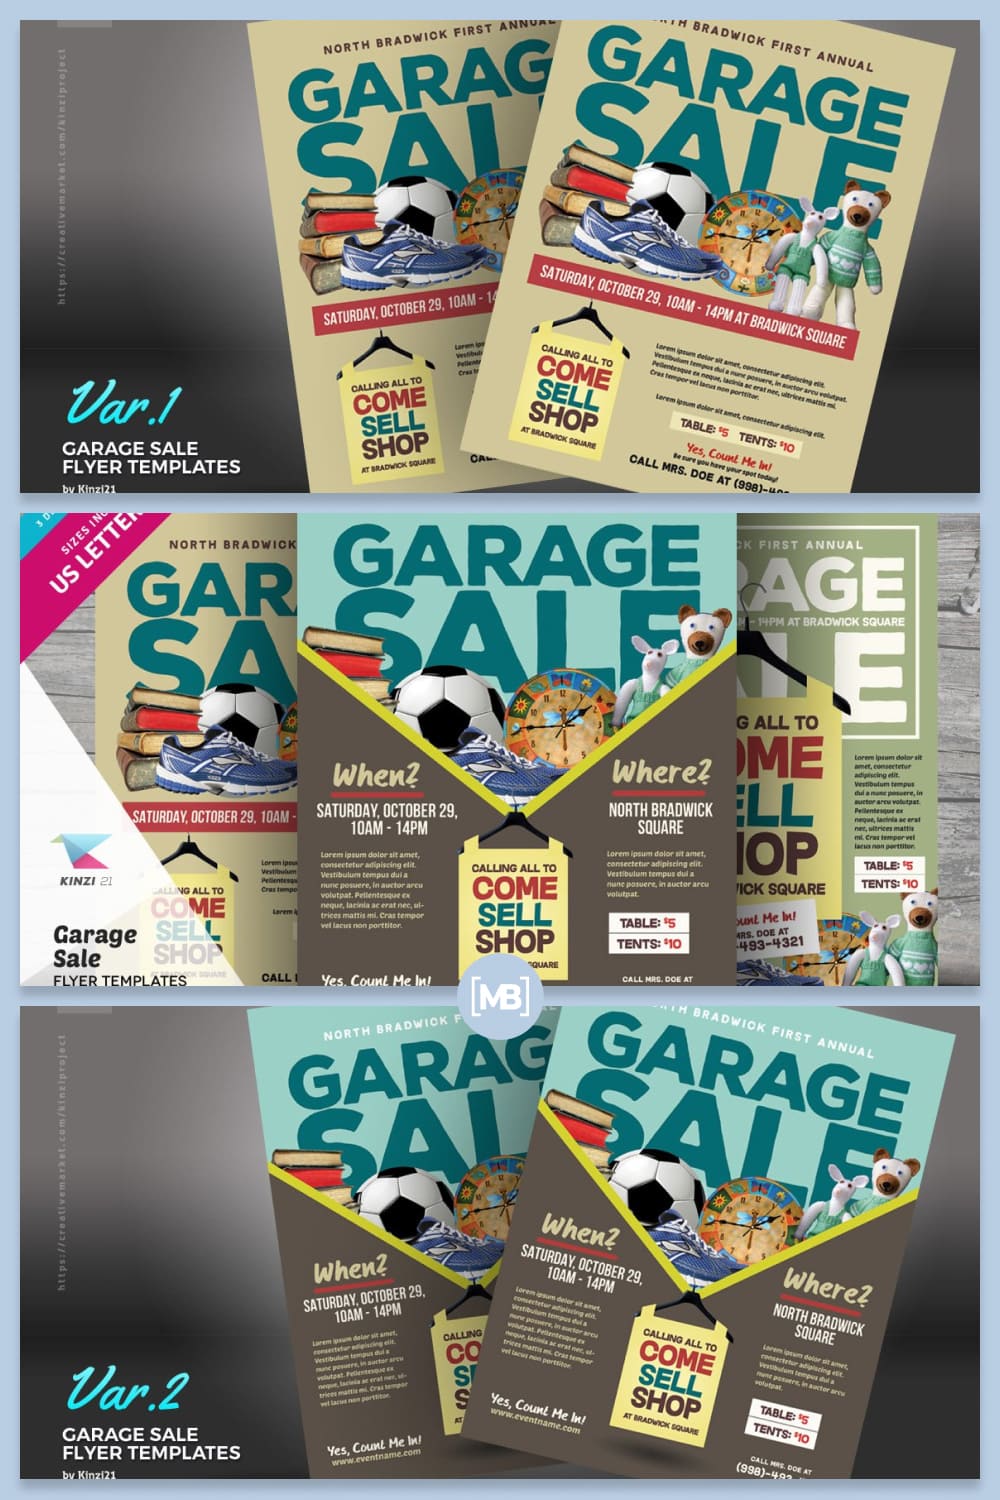 Garage sale flyer templates.